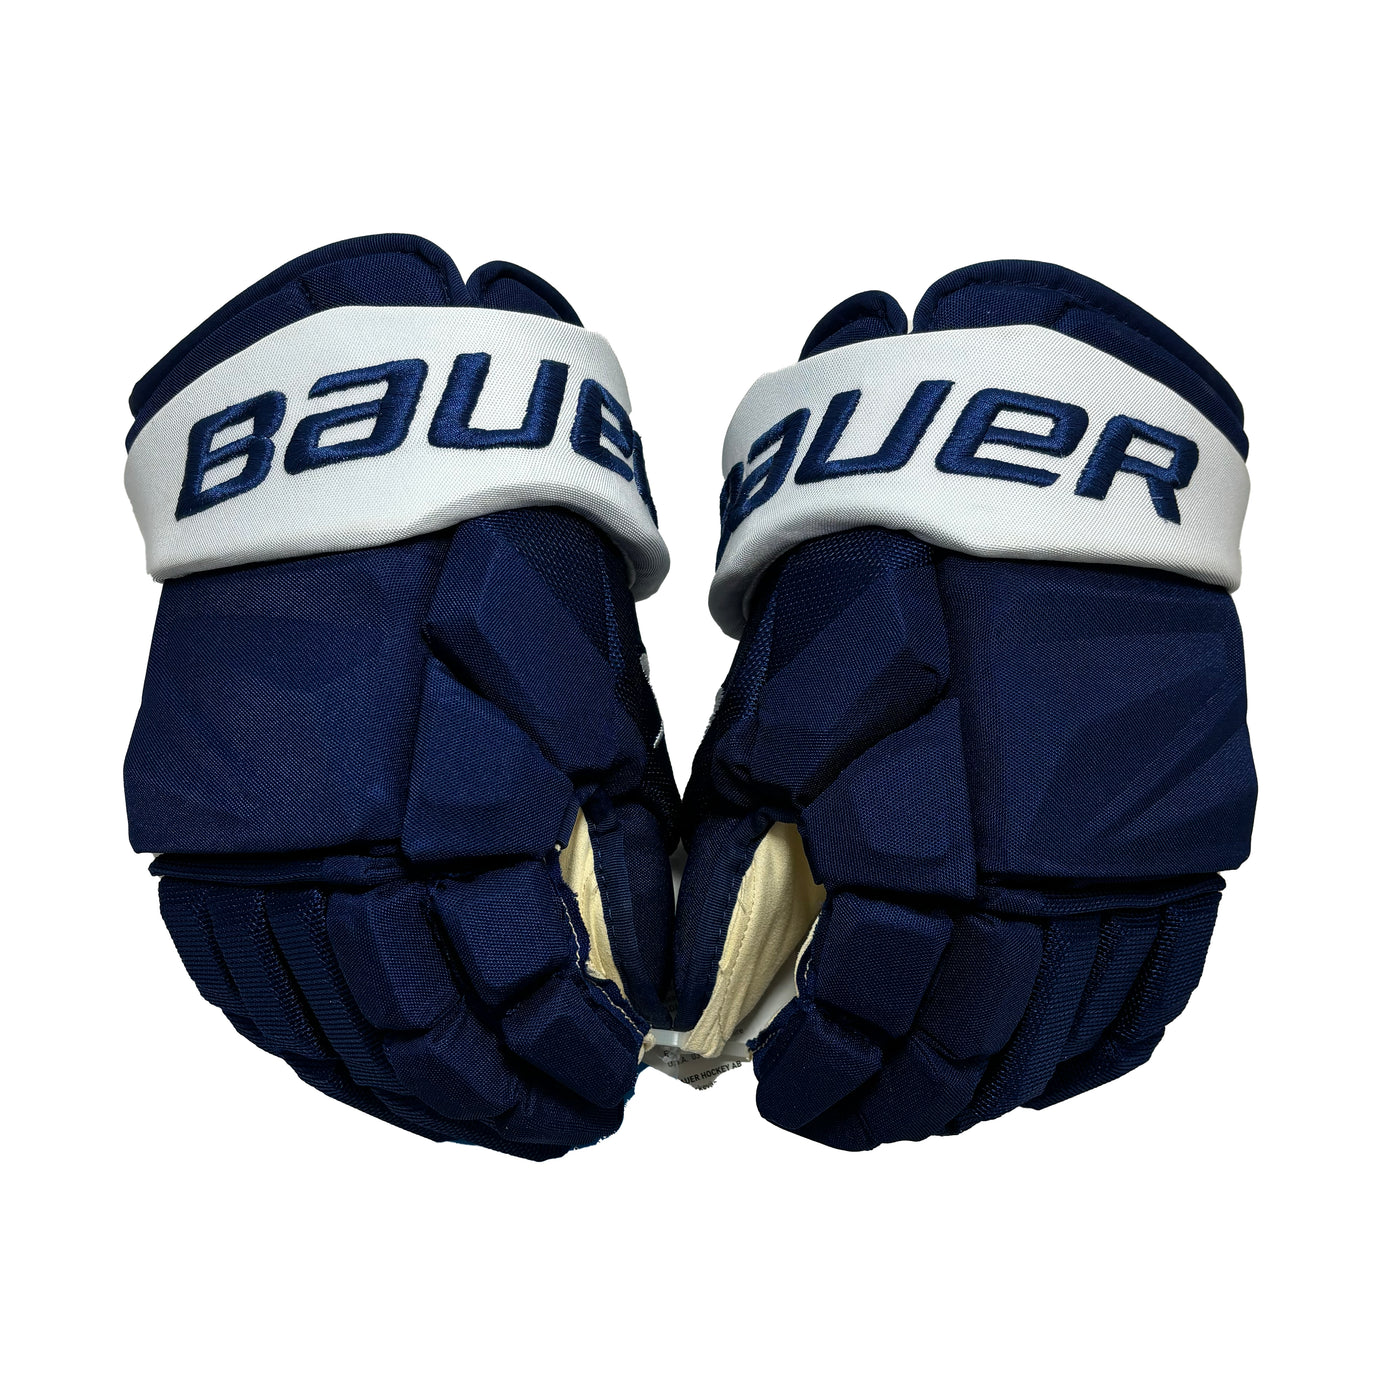 Bauer Vapor Hyperlite - Toronto Maple Leafs - Pro Stock Hockey Gloves - LS